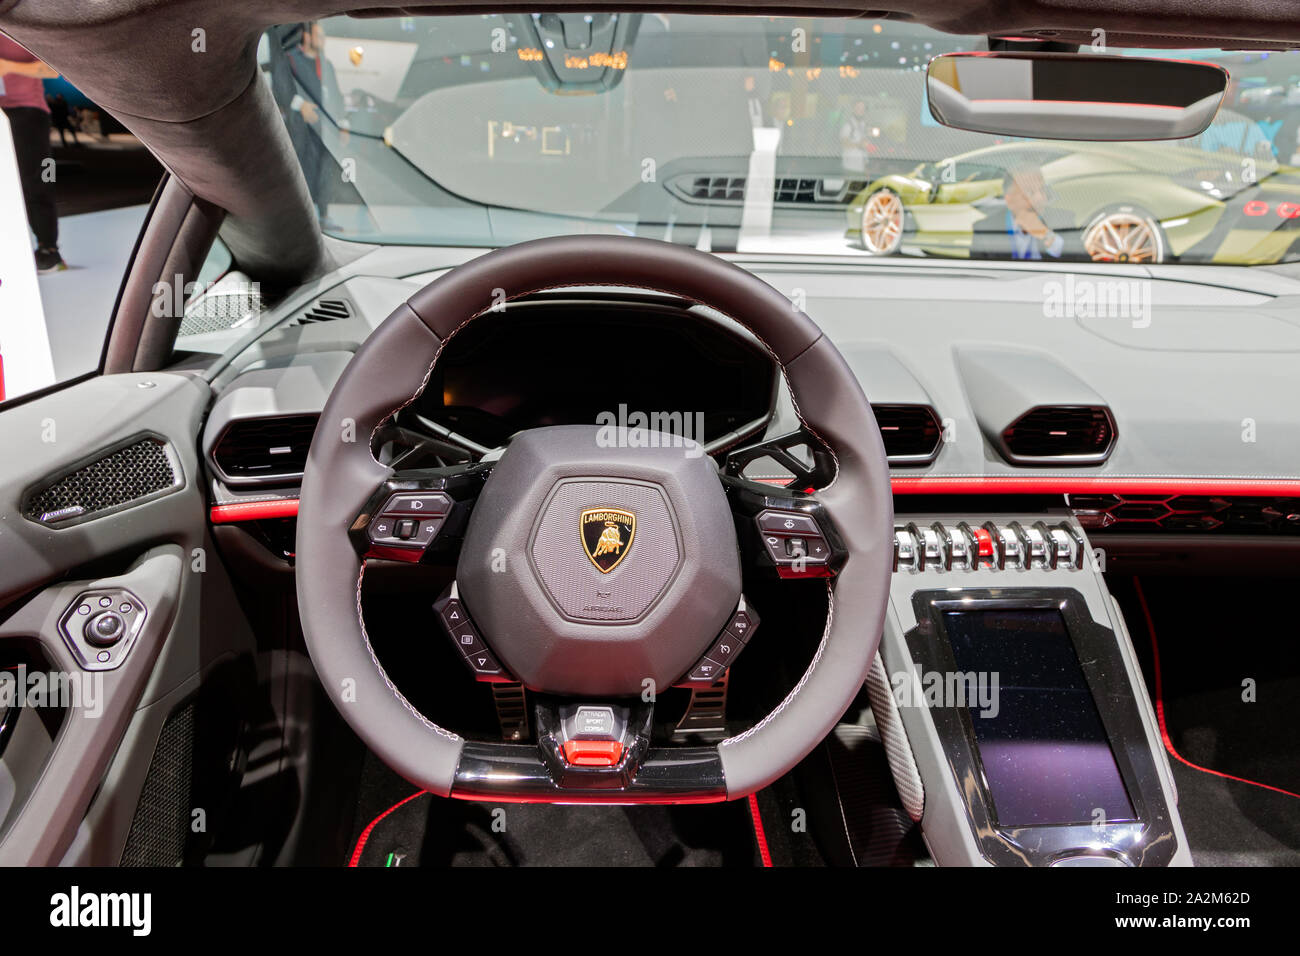 Francoforte, Germania - Sep 11, 2019: vista interna della Lamborghini Huracan EVO Spyder auto sportiva ha presentato al salone di Francoforte IAA Motor Show 2019. Foto Stock